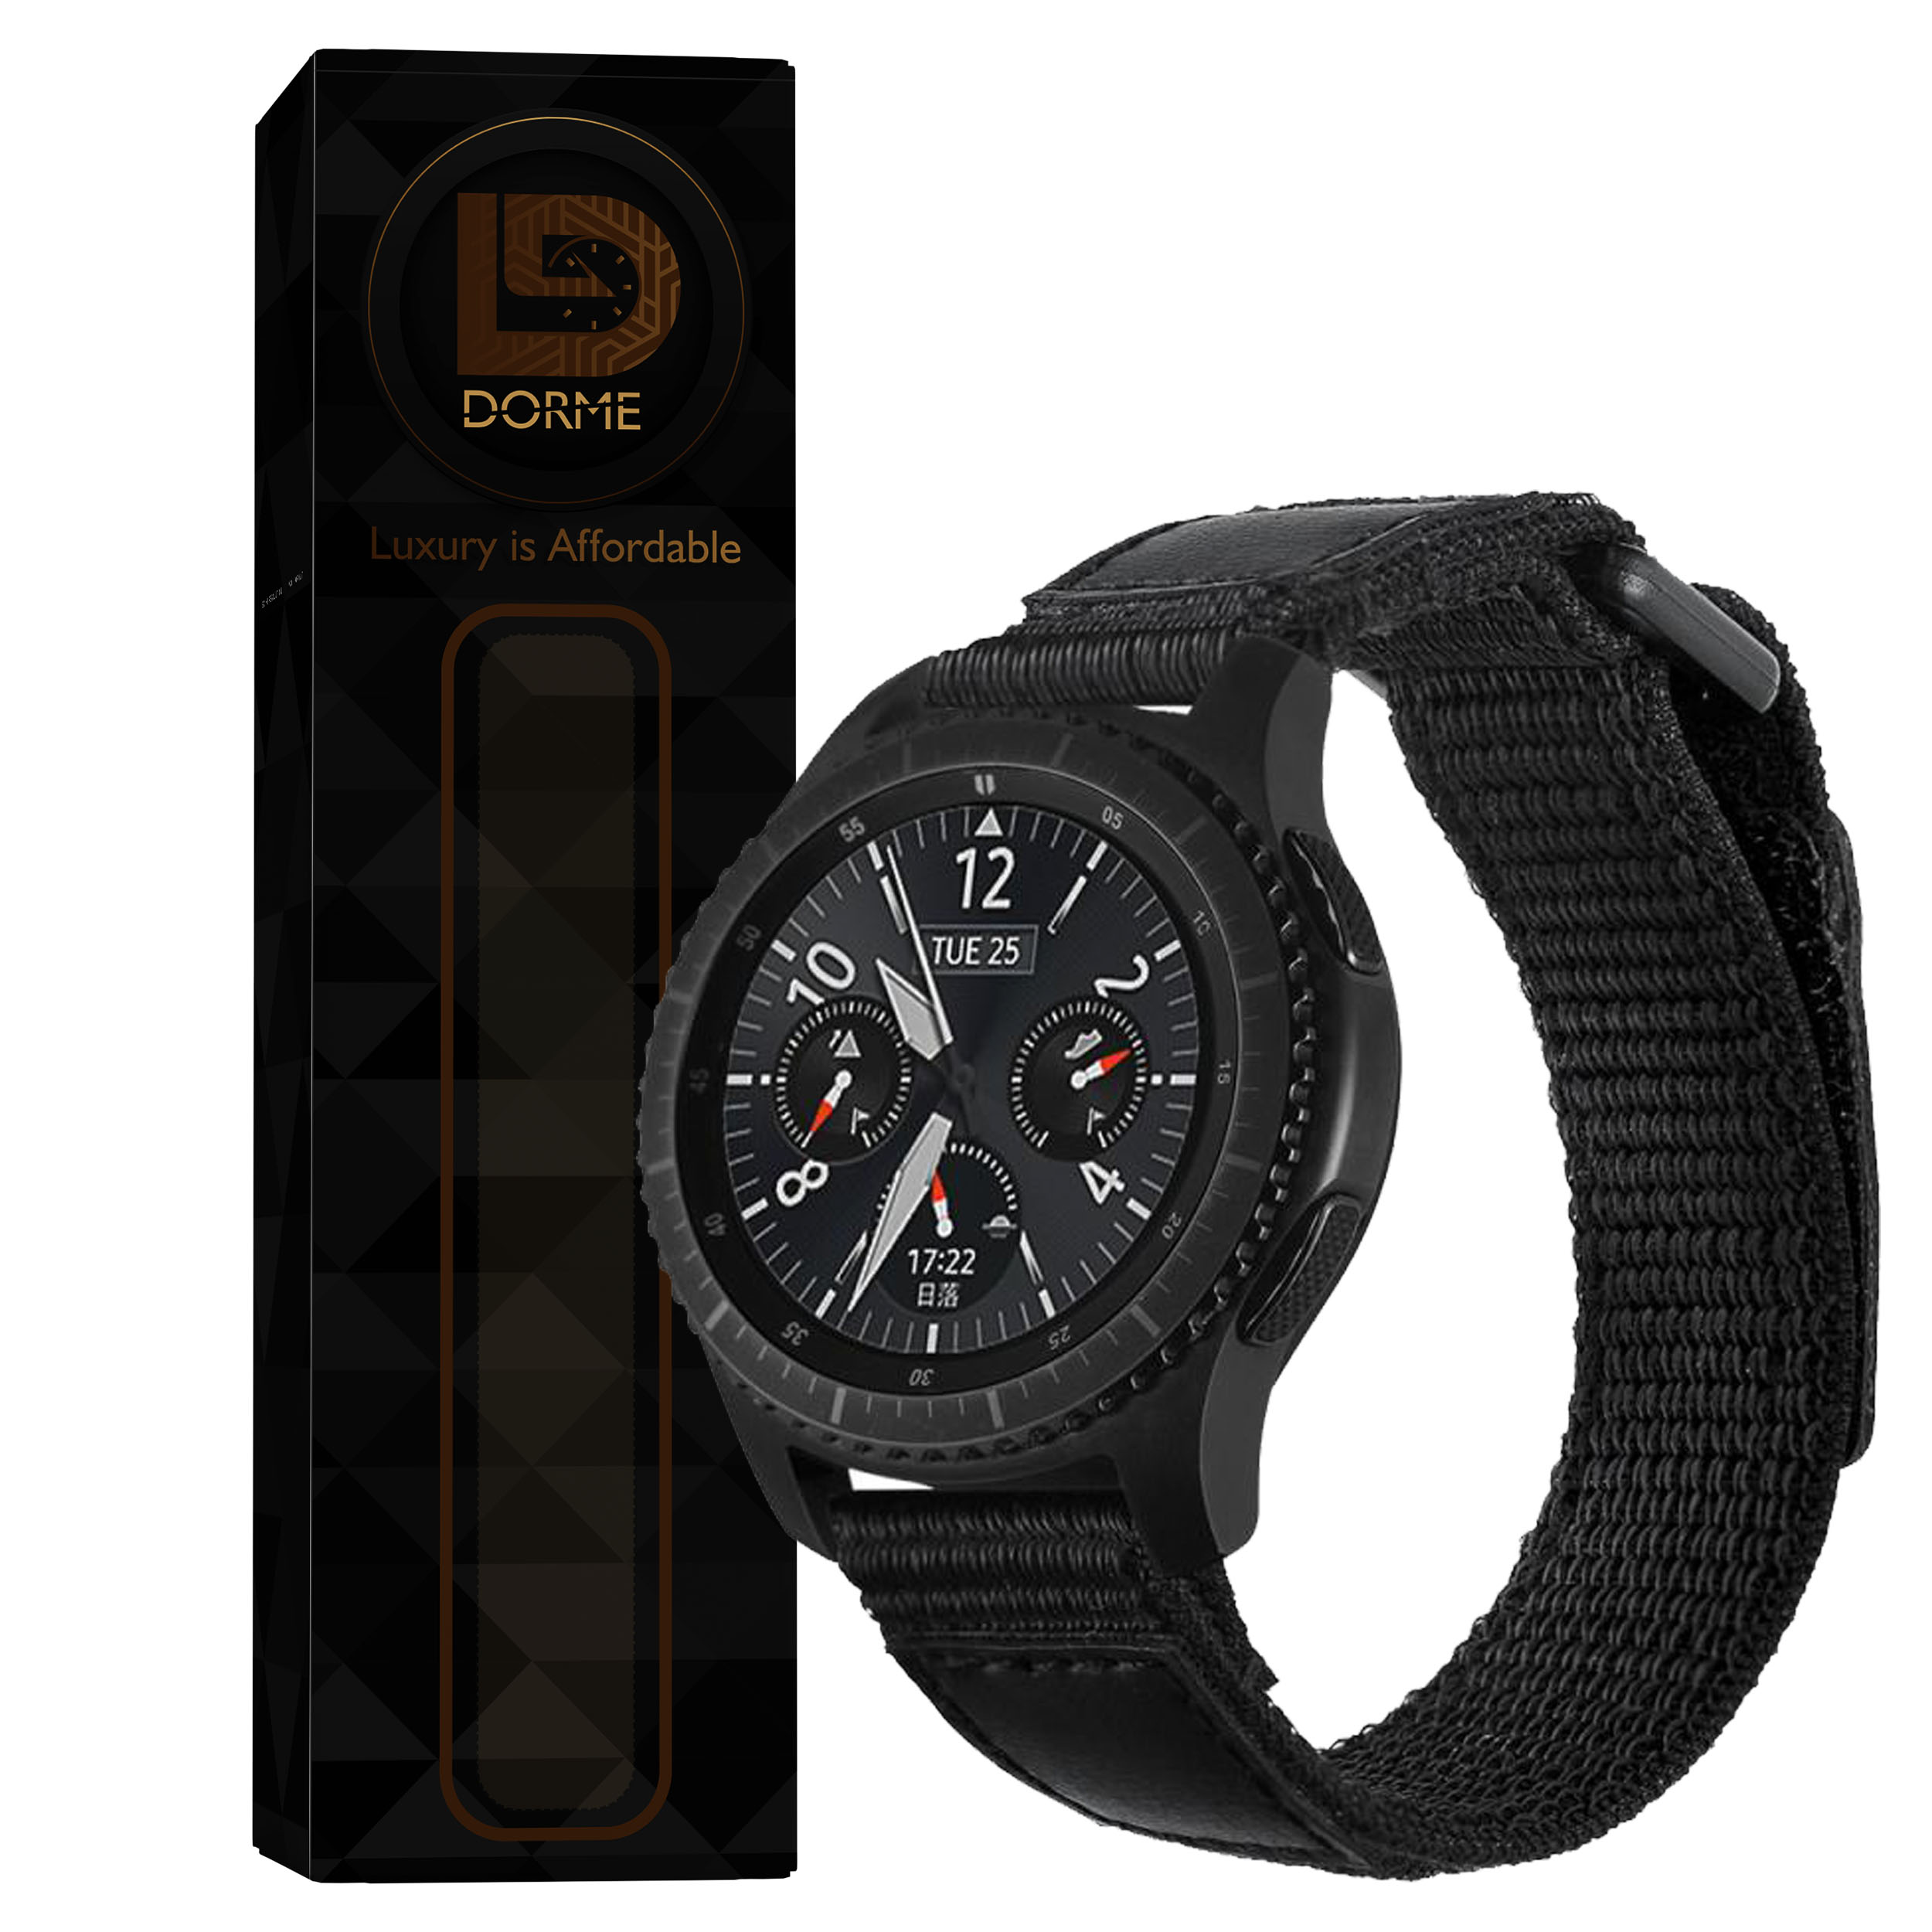 بند درمه مدل Trainer  مناسب برای ساعت هوشمند کروس مدل APEX Pro